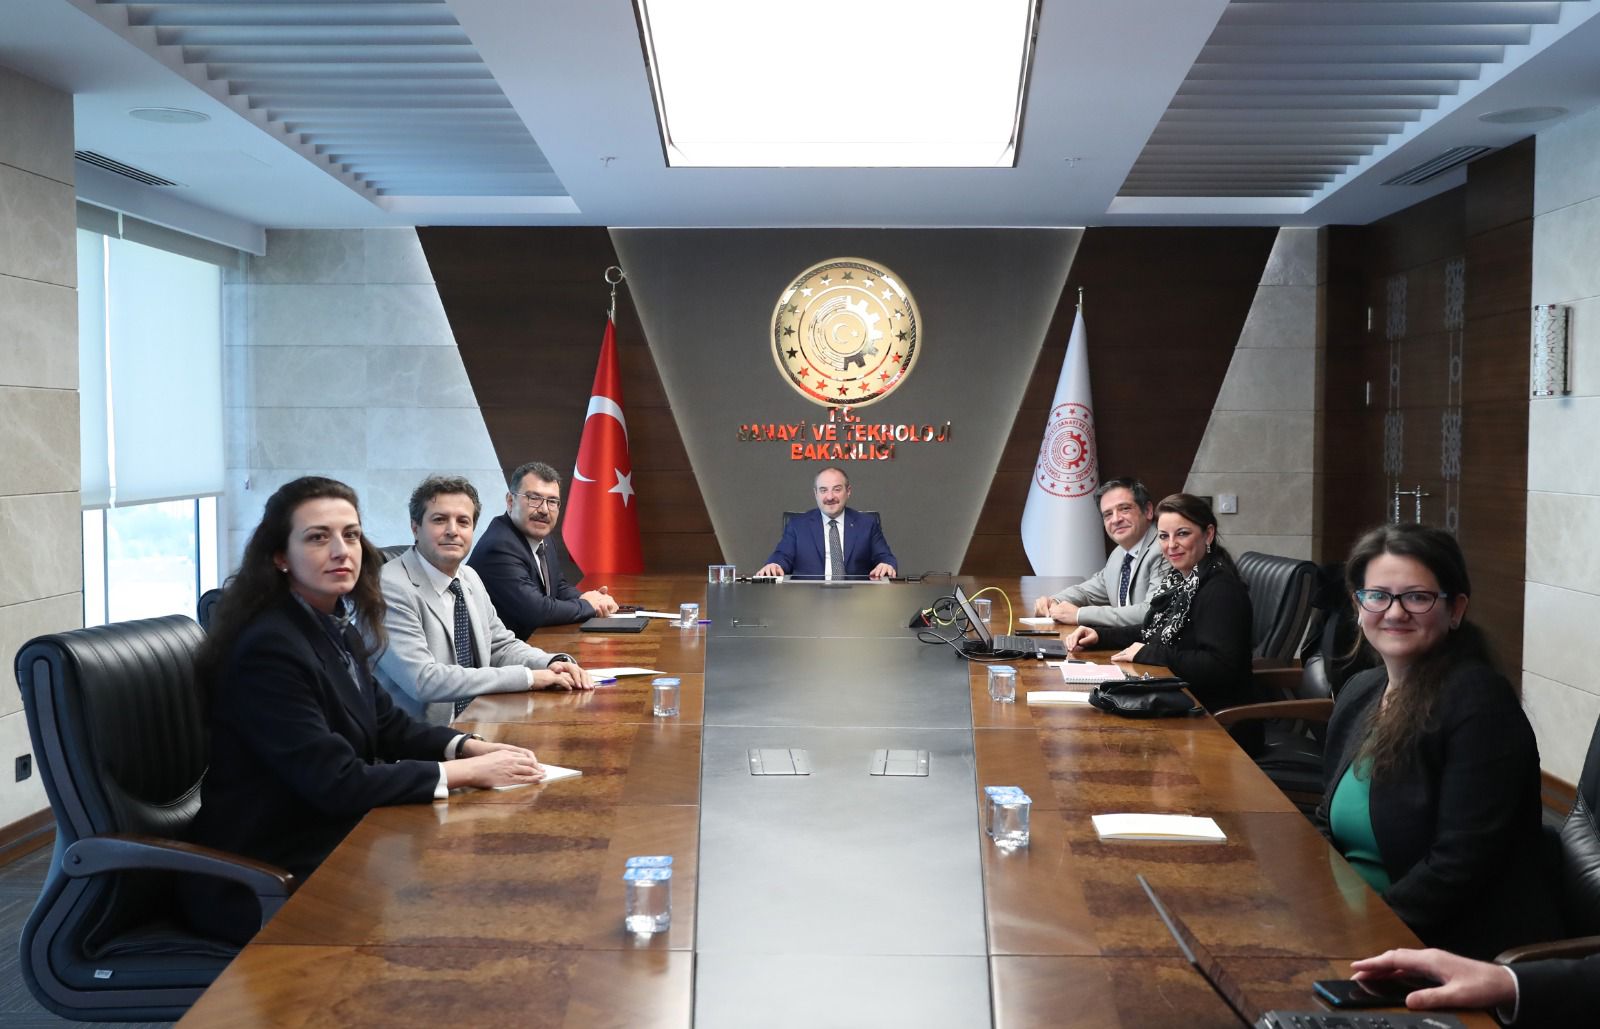 Eskişehir Osmangazi Üniversitesi (ESOGÜ) heyetinin Sanayi ve Teknoloji Bakanı Mustafa Varank ile yaptığı toplantı sonucu, Uçak Mühendisliği Bölümü ve ESOGÜ Havacılık Araştırma Eğitim Merkezi’nin temelinin atılmasına karar verildi.